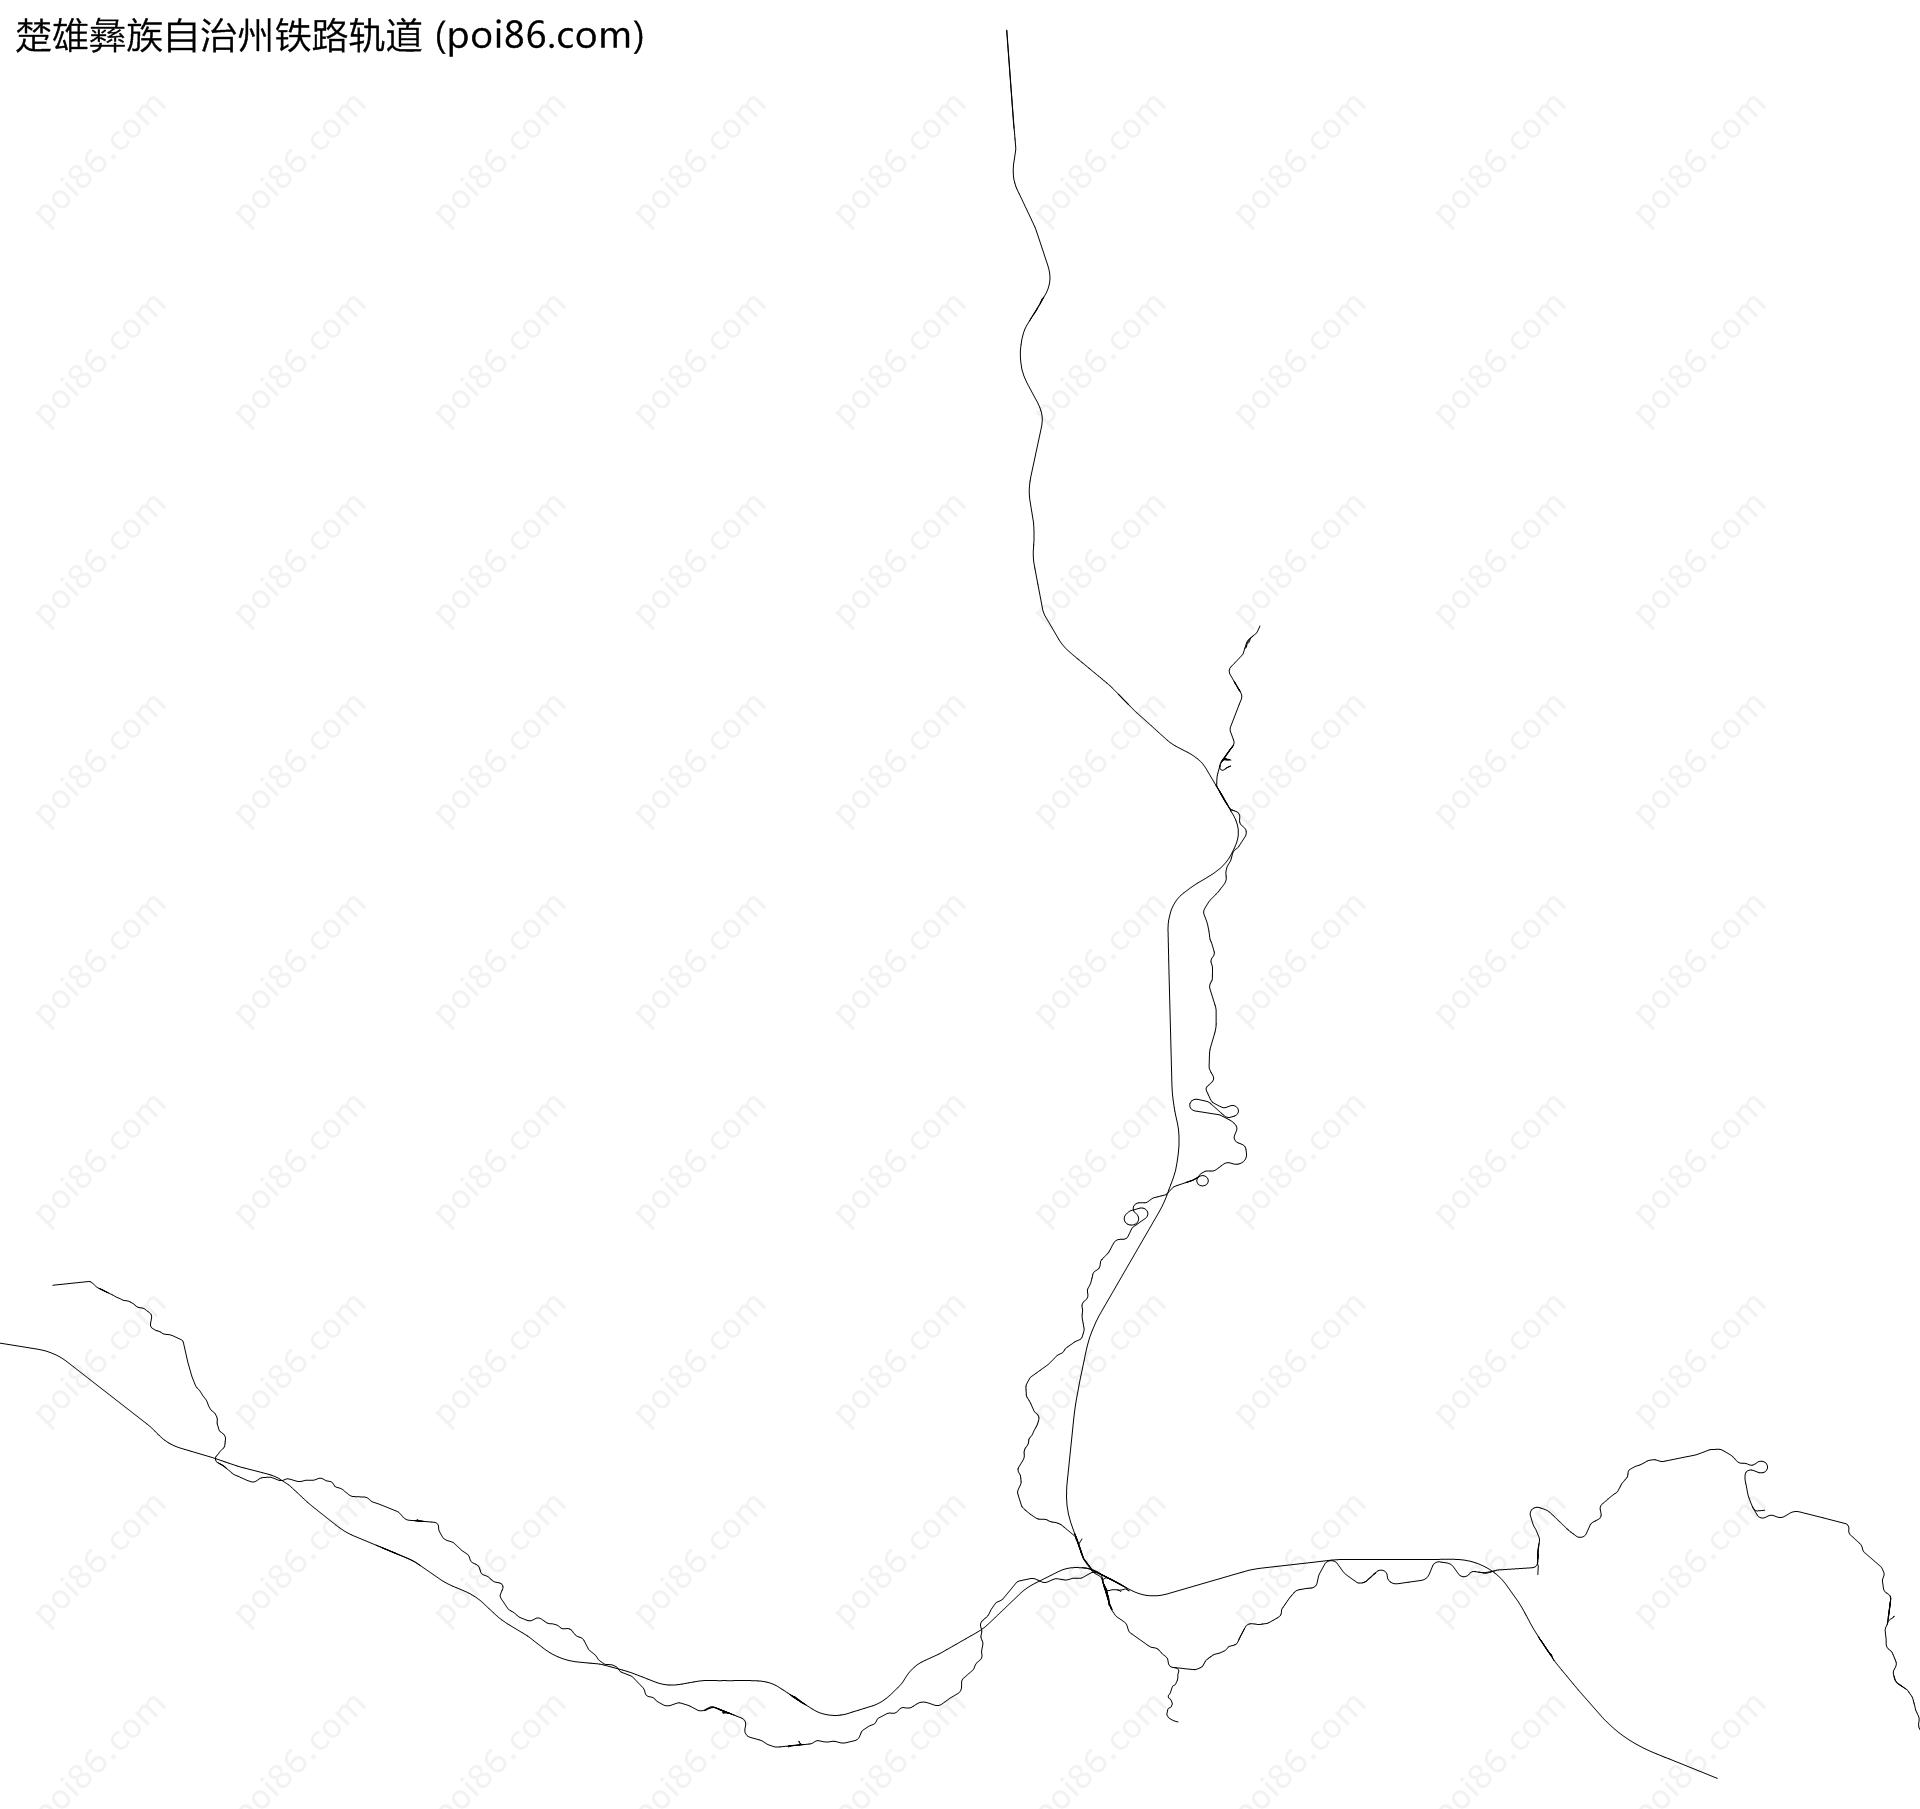 楚雄彝族自治州铁路轨道地图